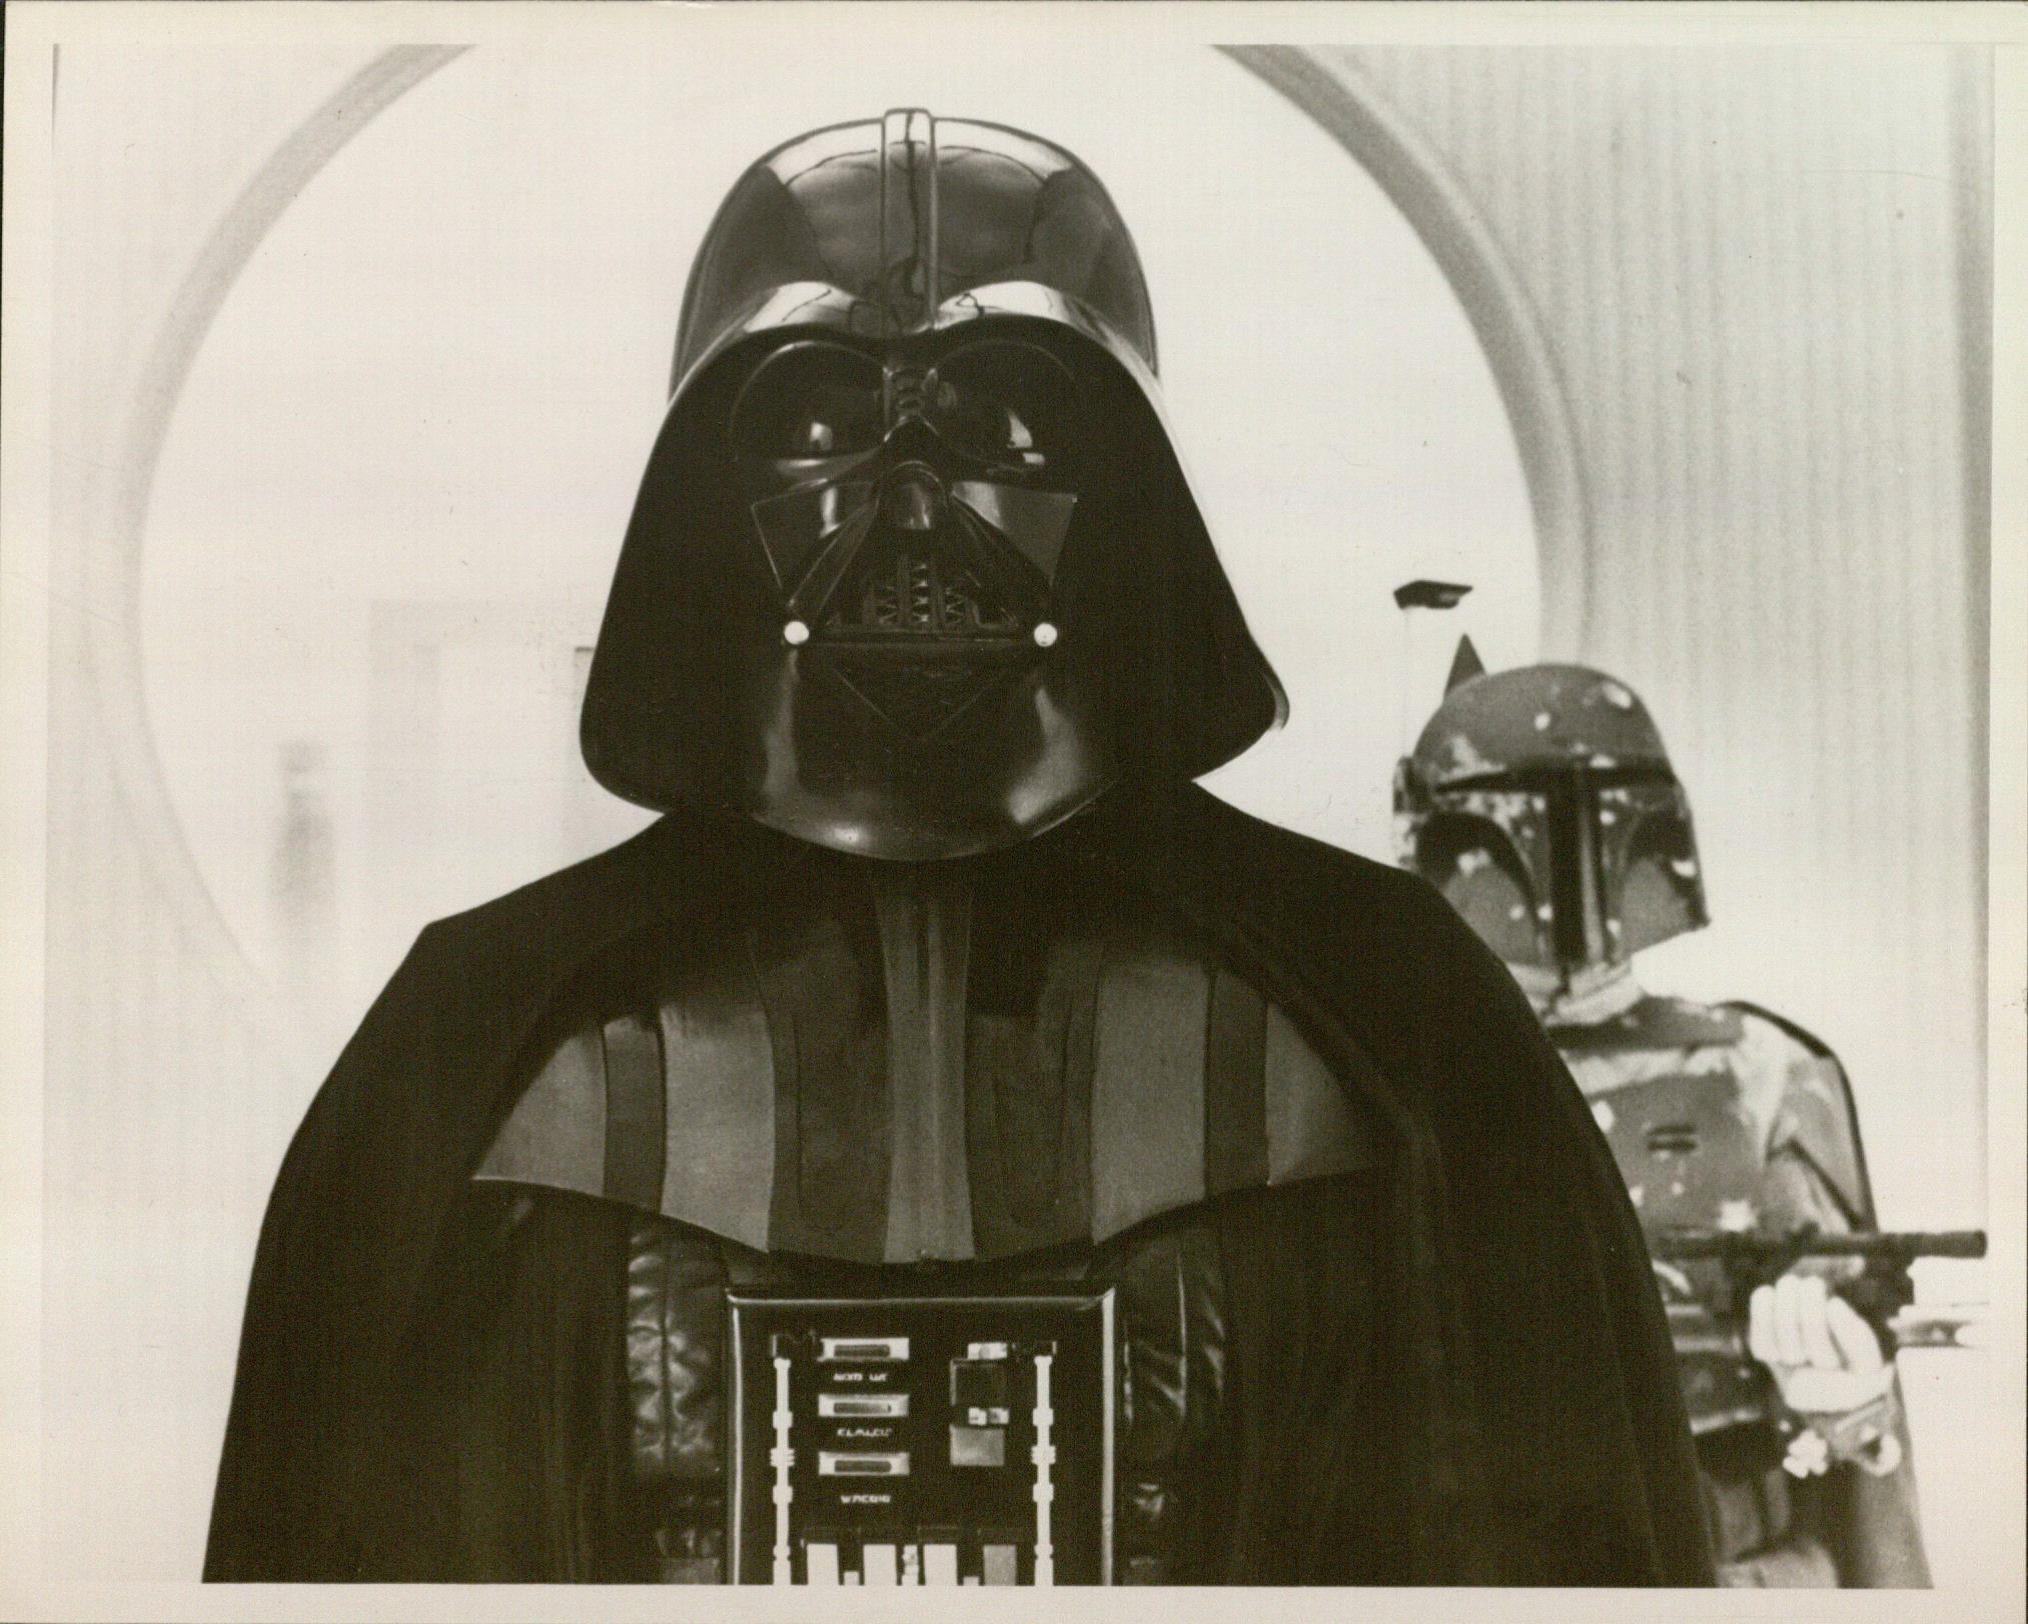 Movie still of Darth Vader and Boba Fett from Star Wars: Episode V - The Empire Strikes Back, 1980